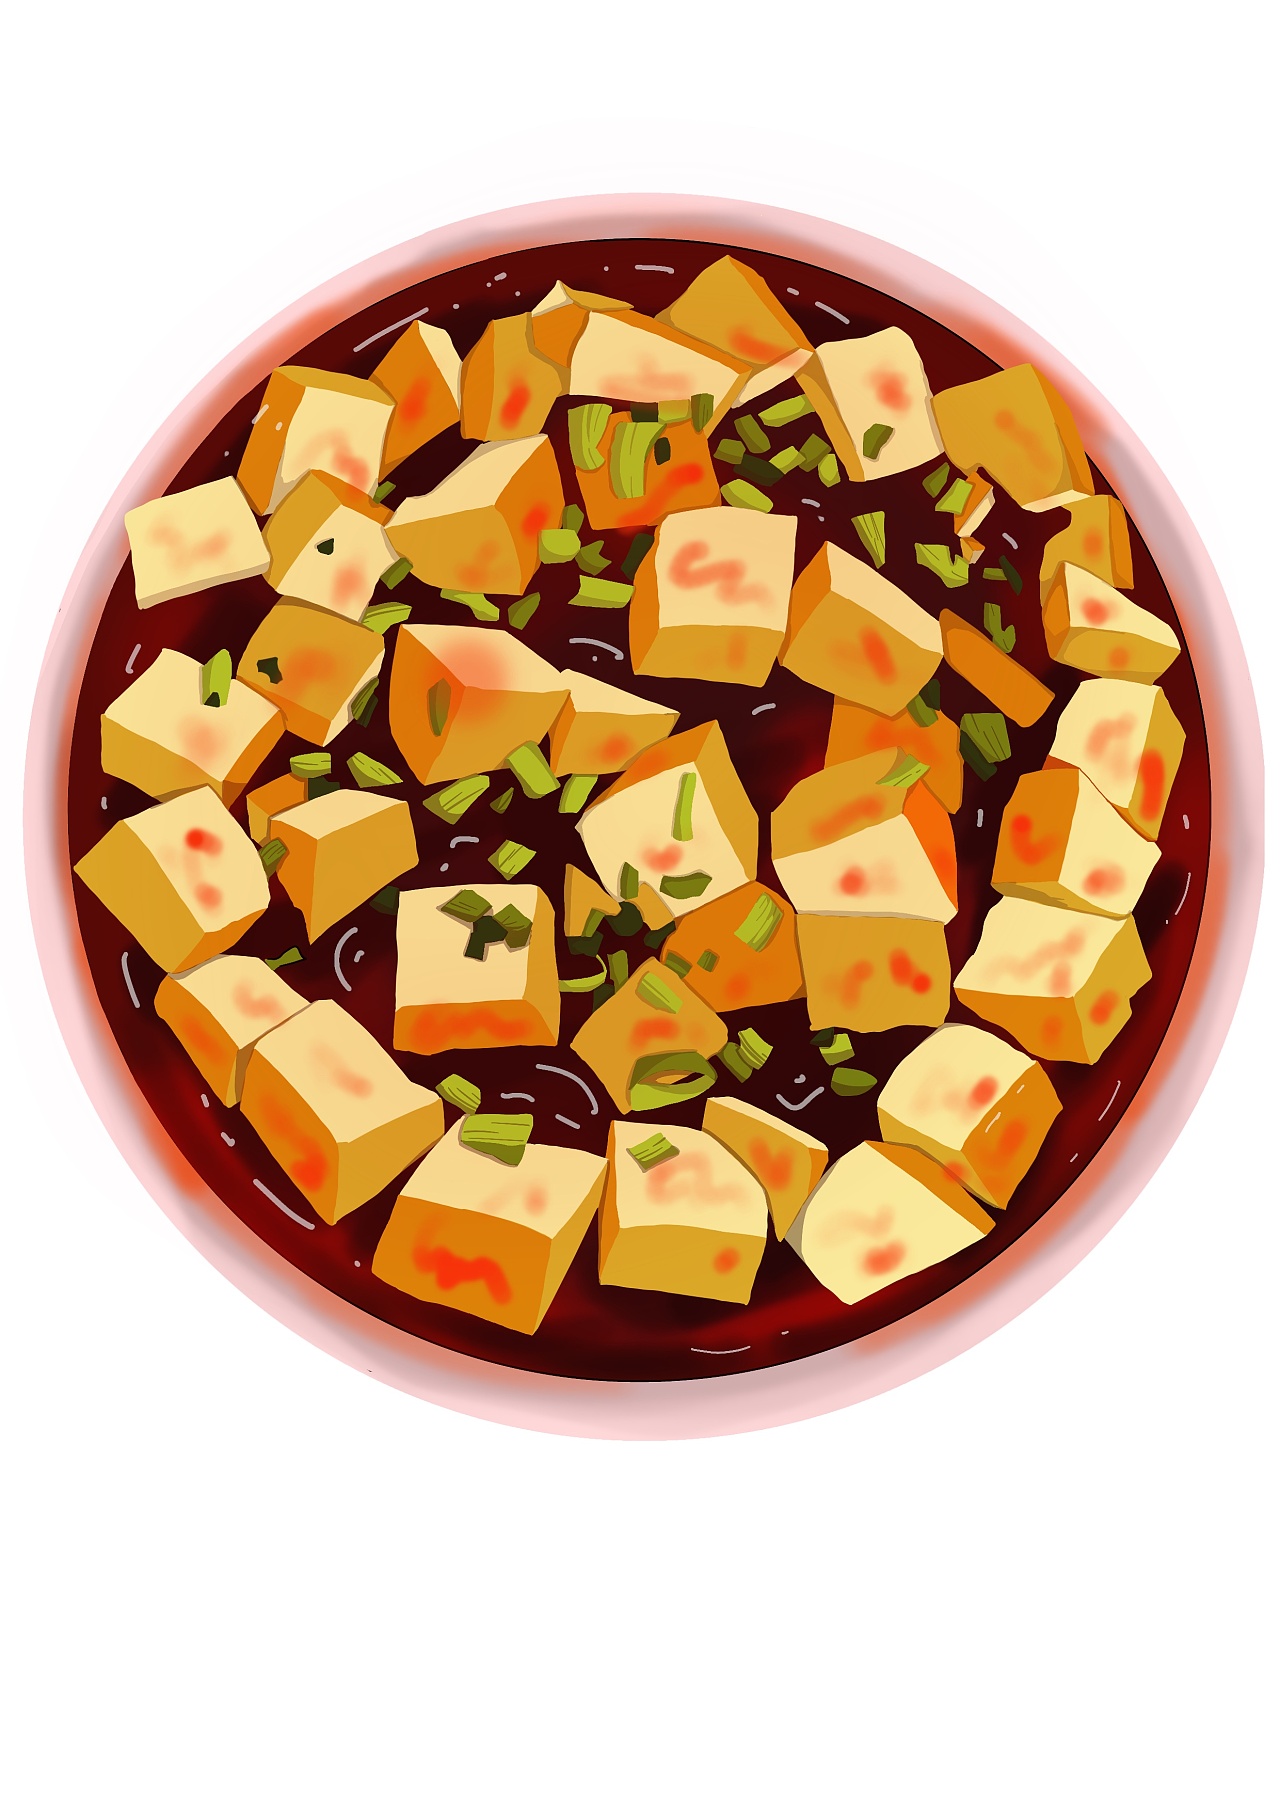 麻婆豆腐简单画法图片